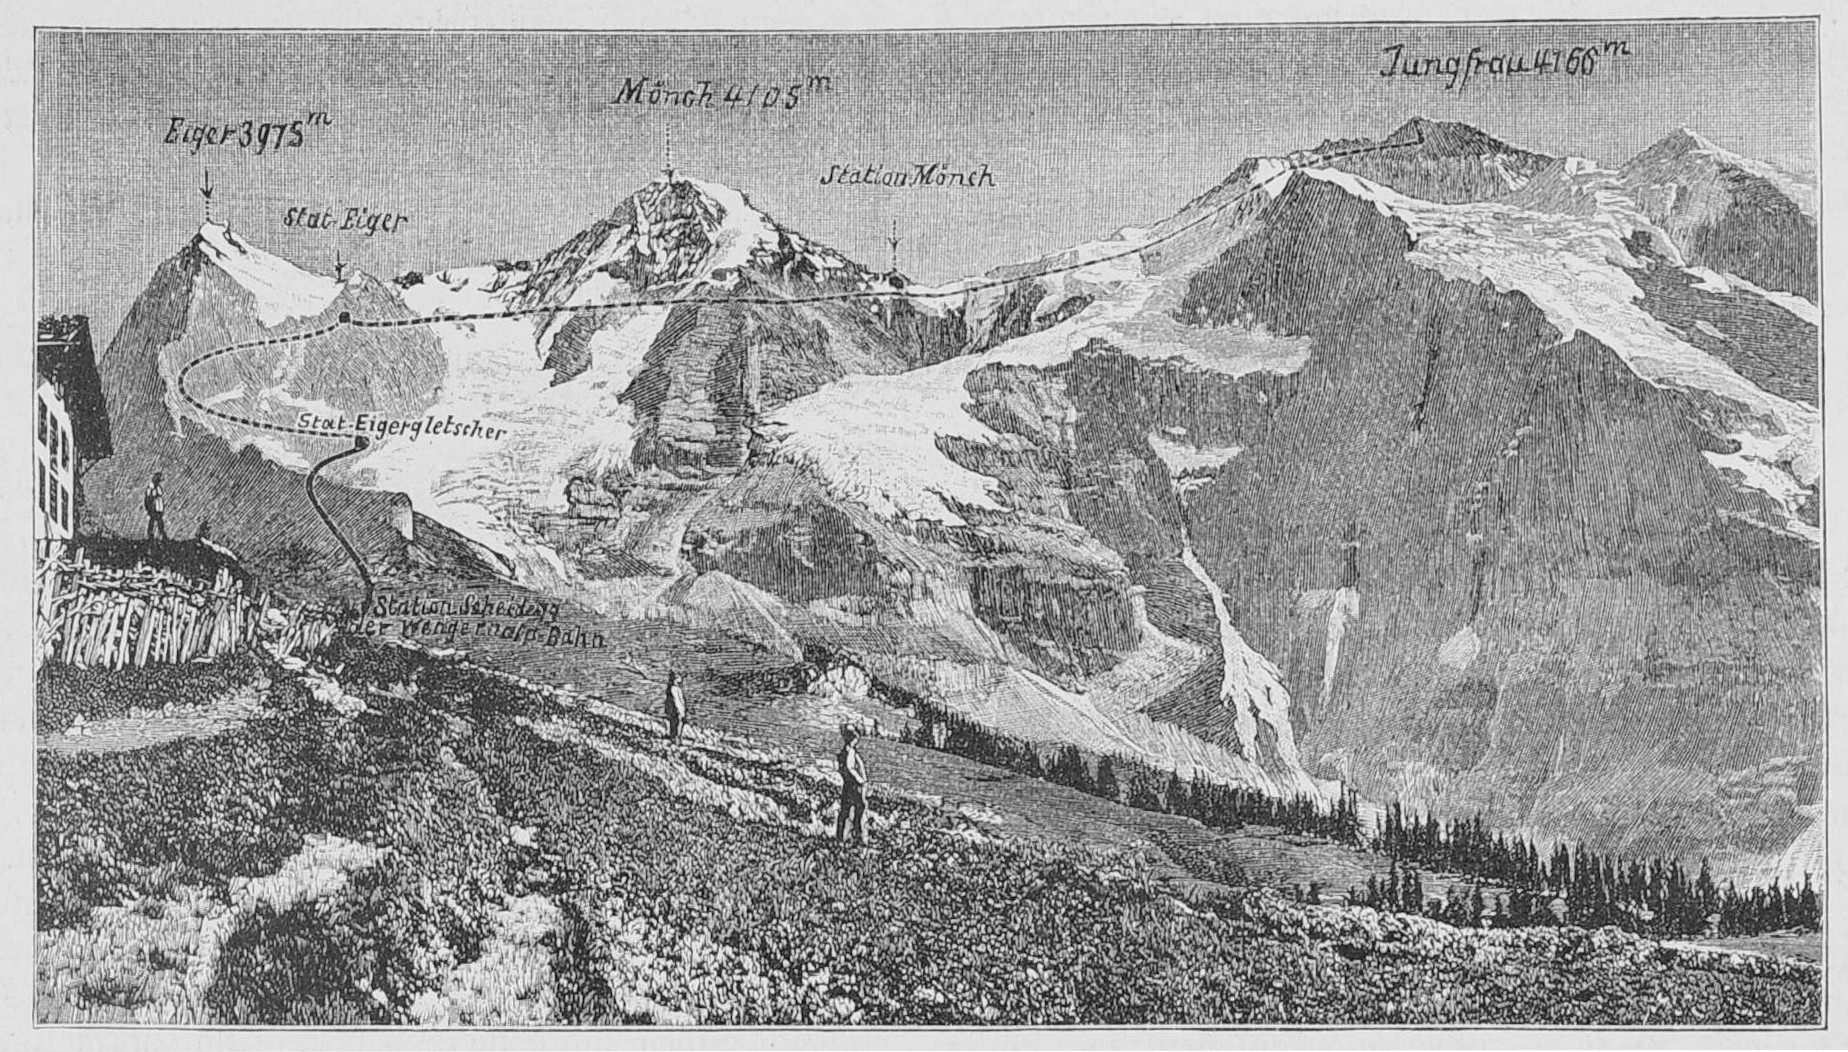 Vergrösserte Ansicht: Altes schwarz-weiss Bild der Berge, welches das geplante Bauprojekt zeigt